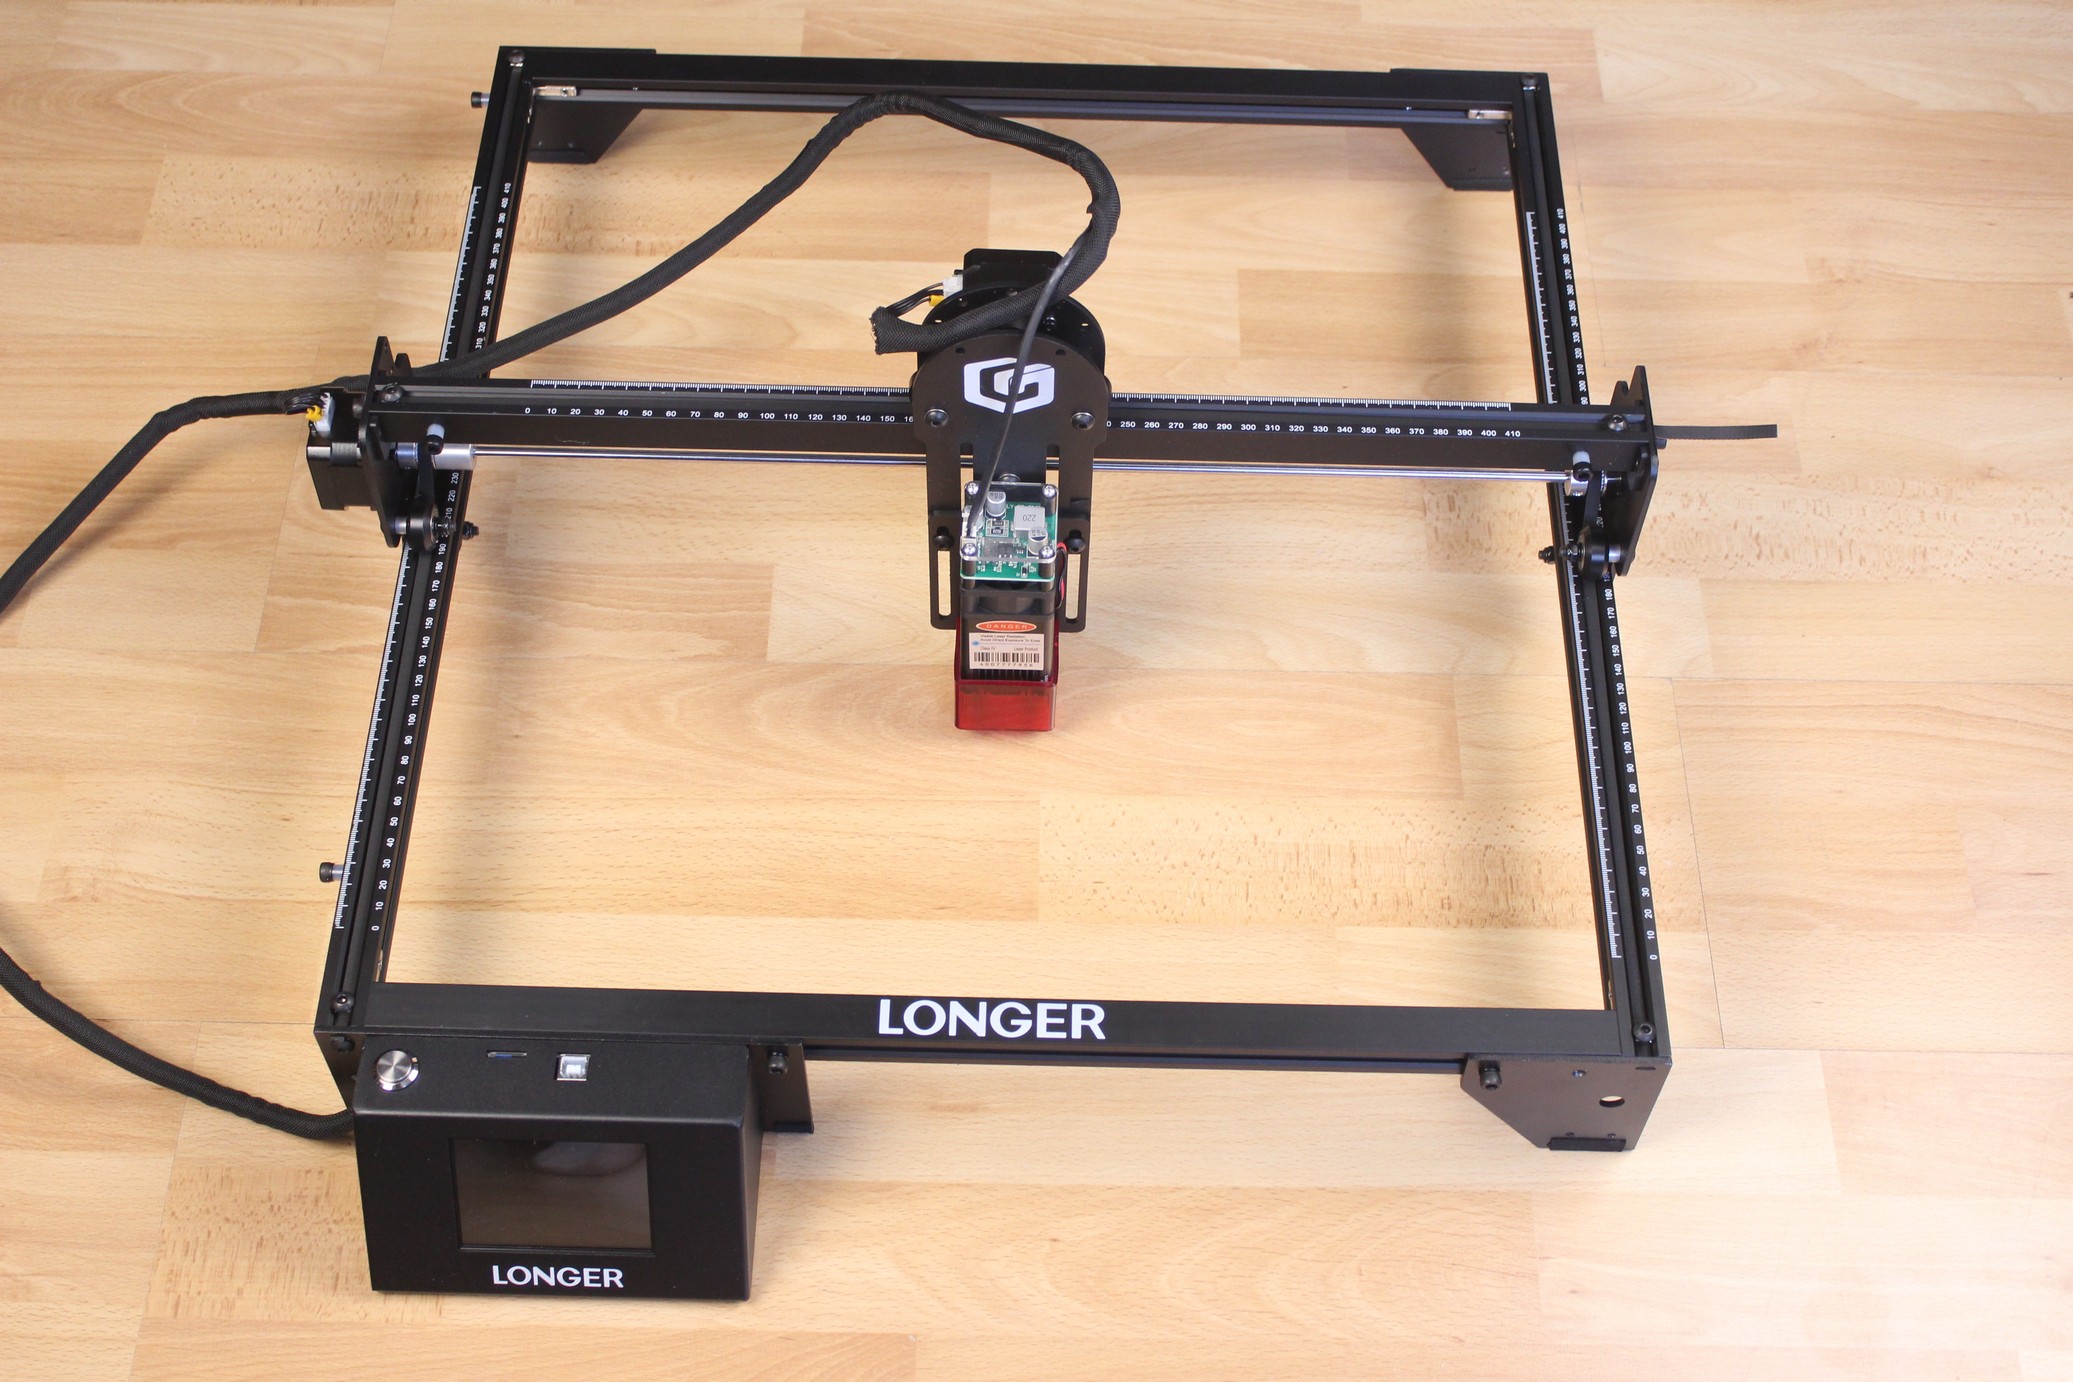 LONGER RAY5 Design | LONGER RAY5 Laser Engraver Review